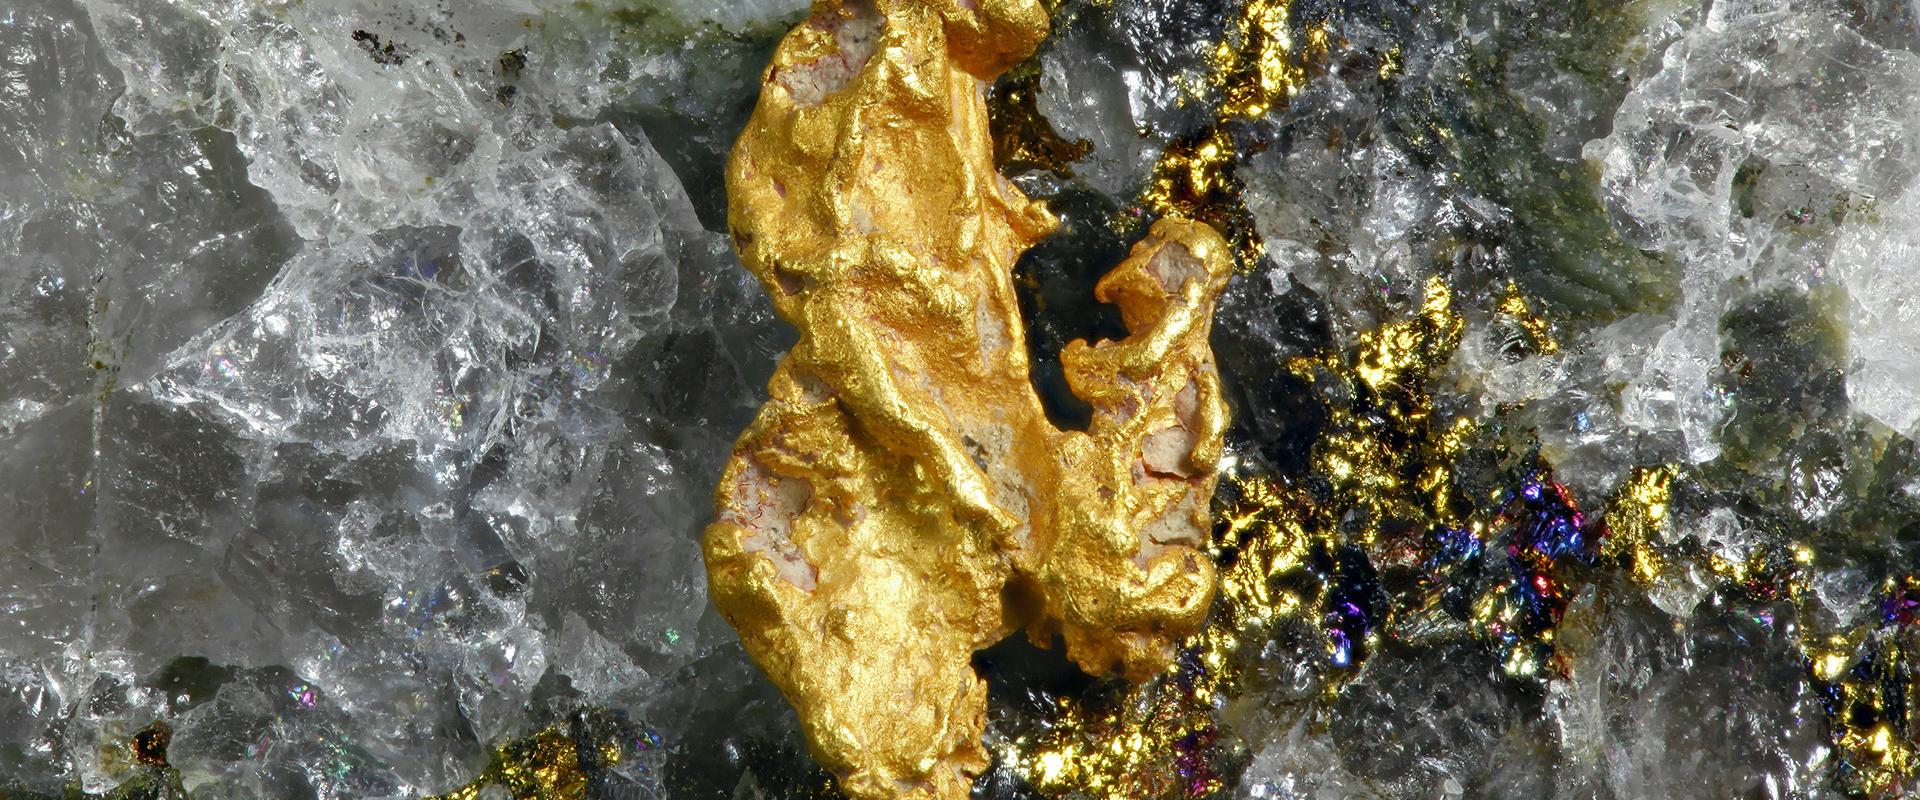 Pépite d'or et quartz, Finlande